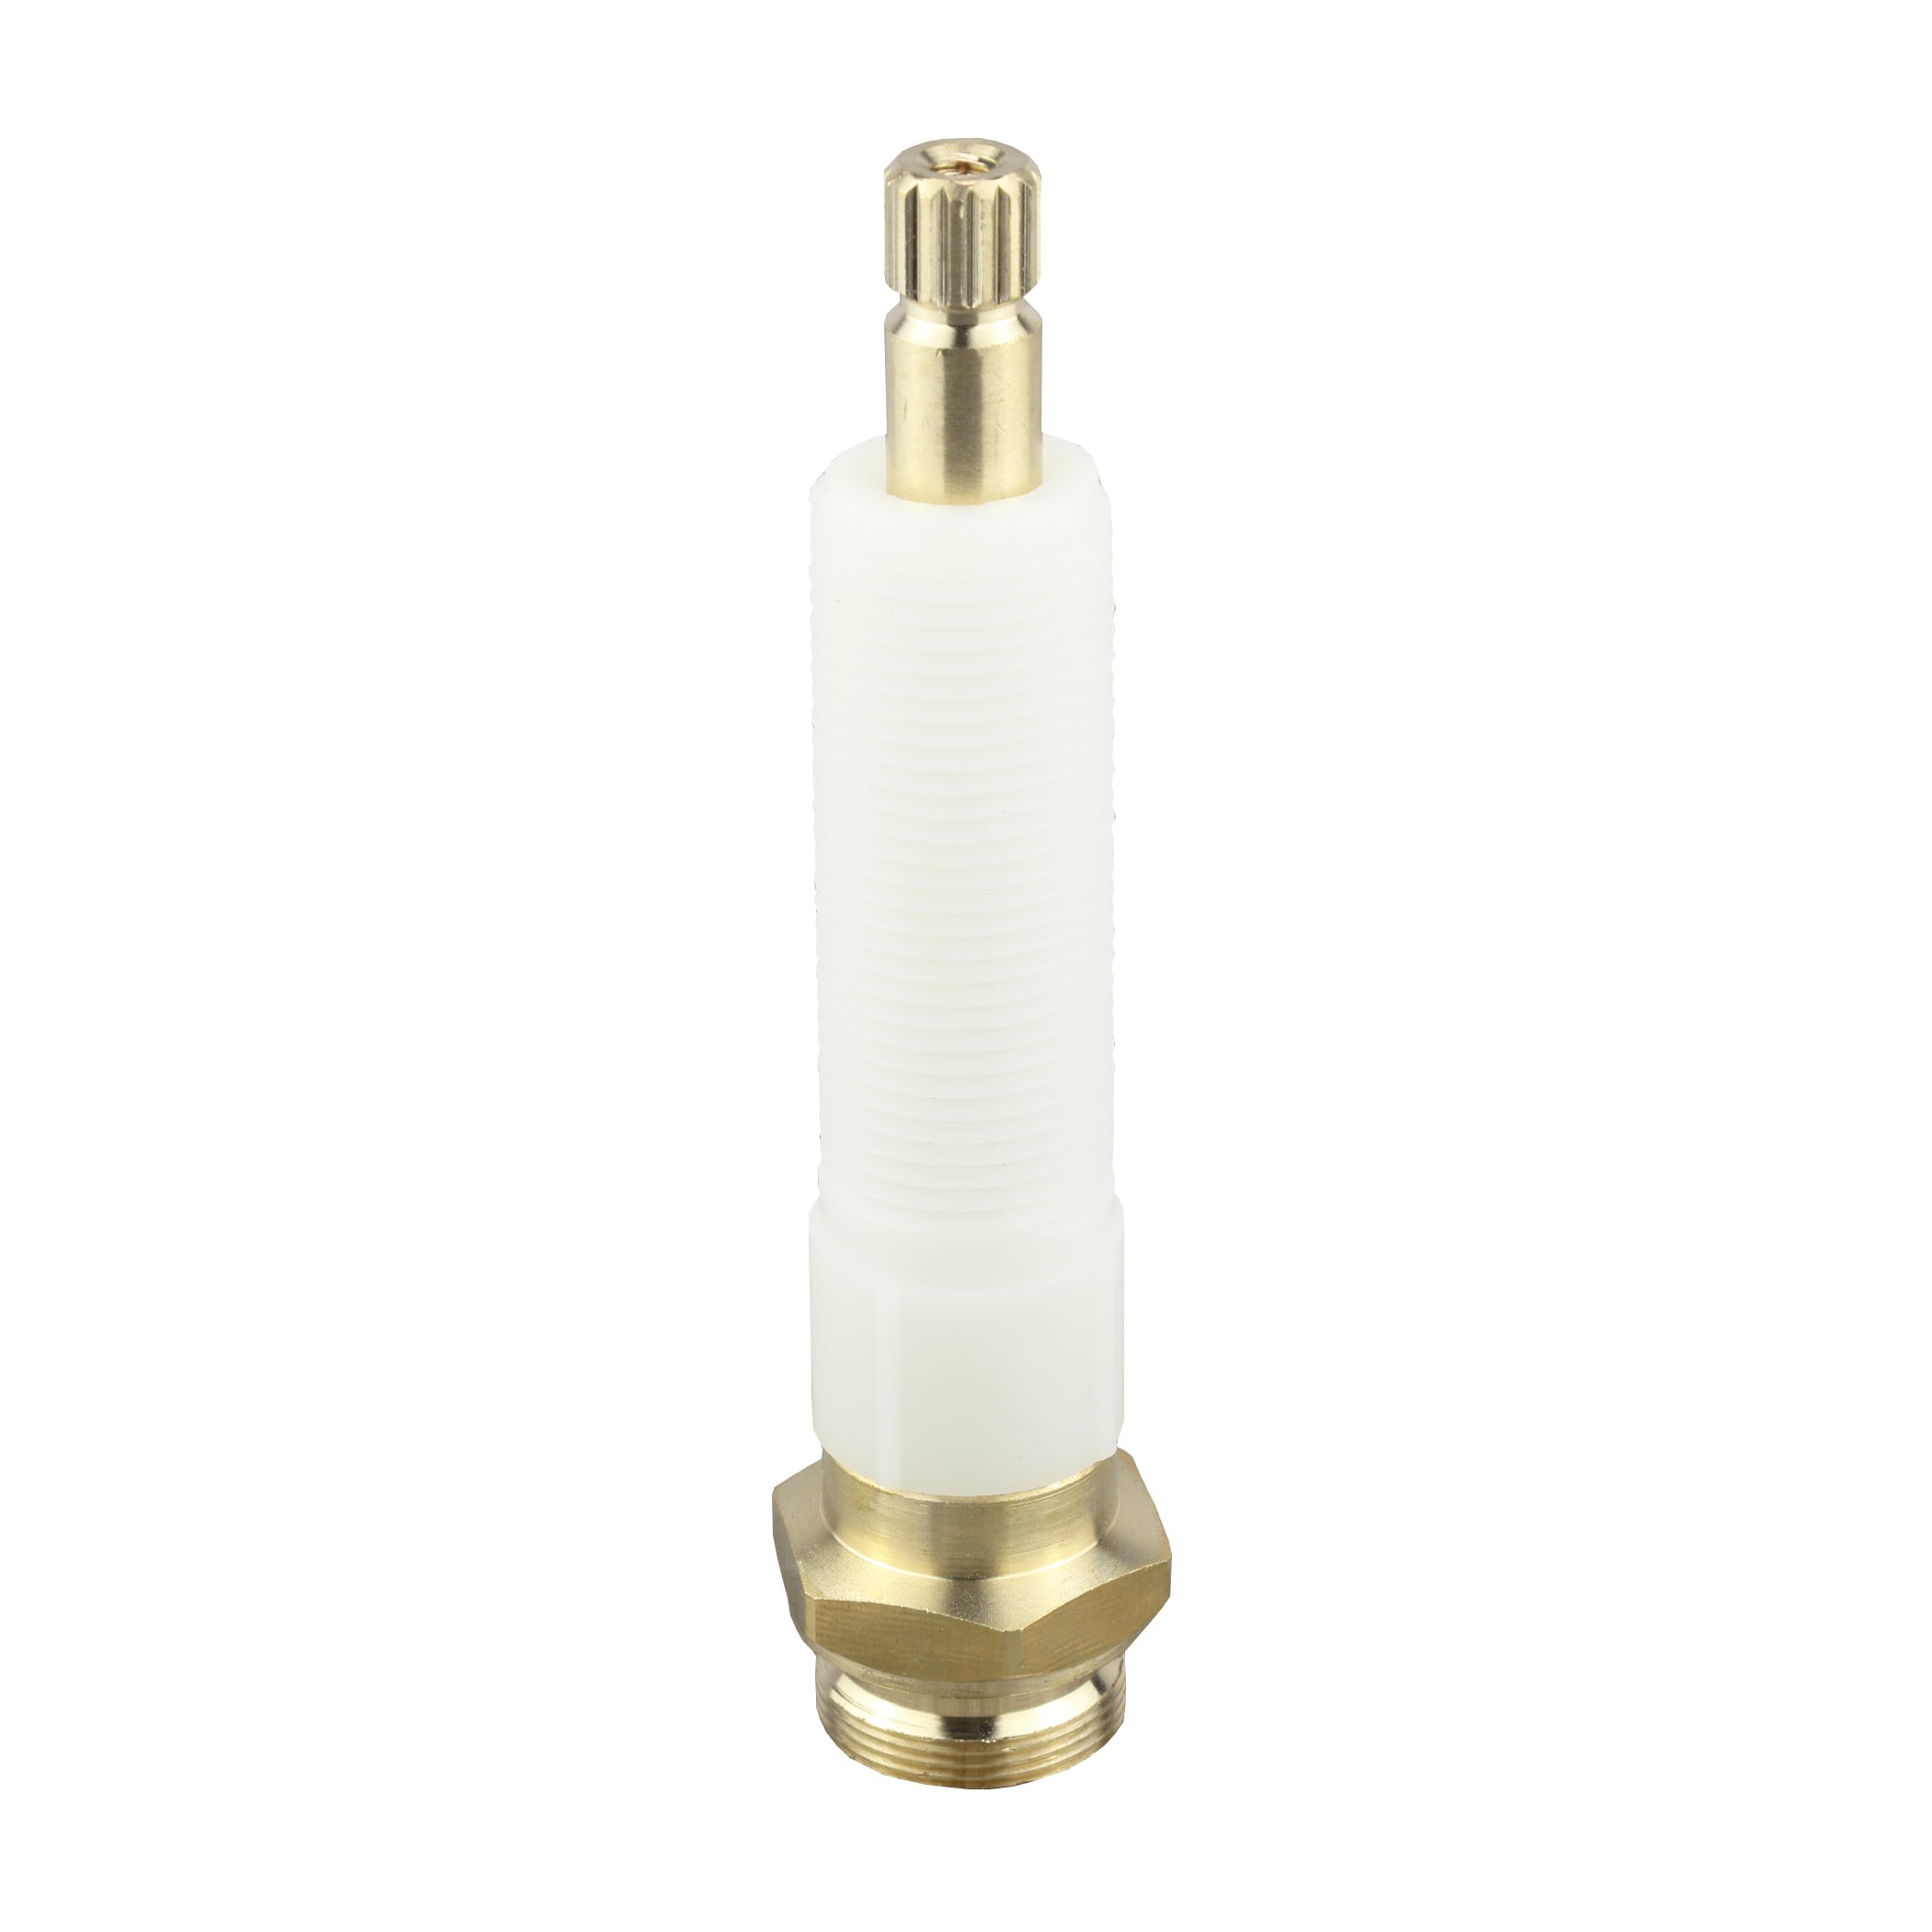 Danco 17491B 9C-26H/C Hot/Cold Stem for Kohler Faucets